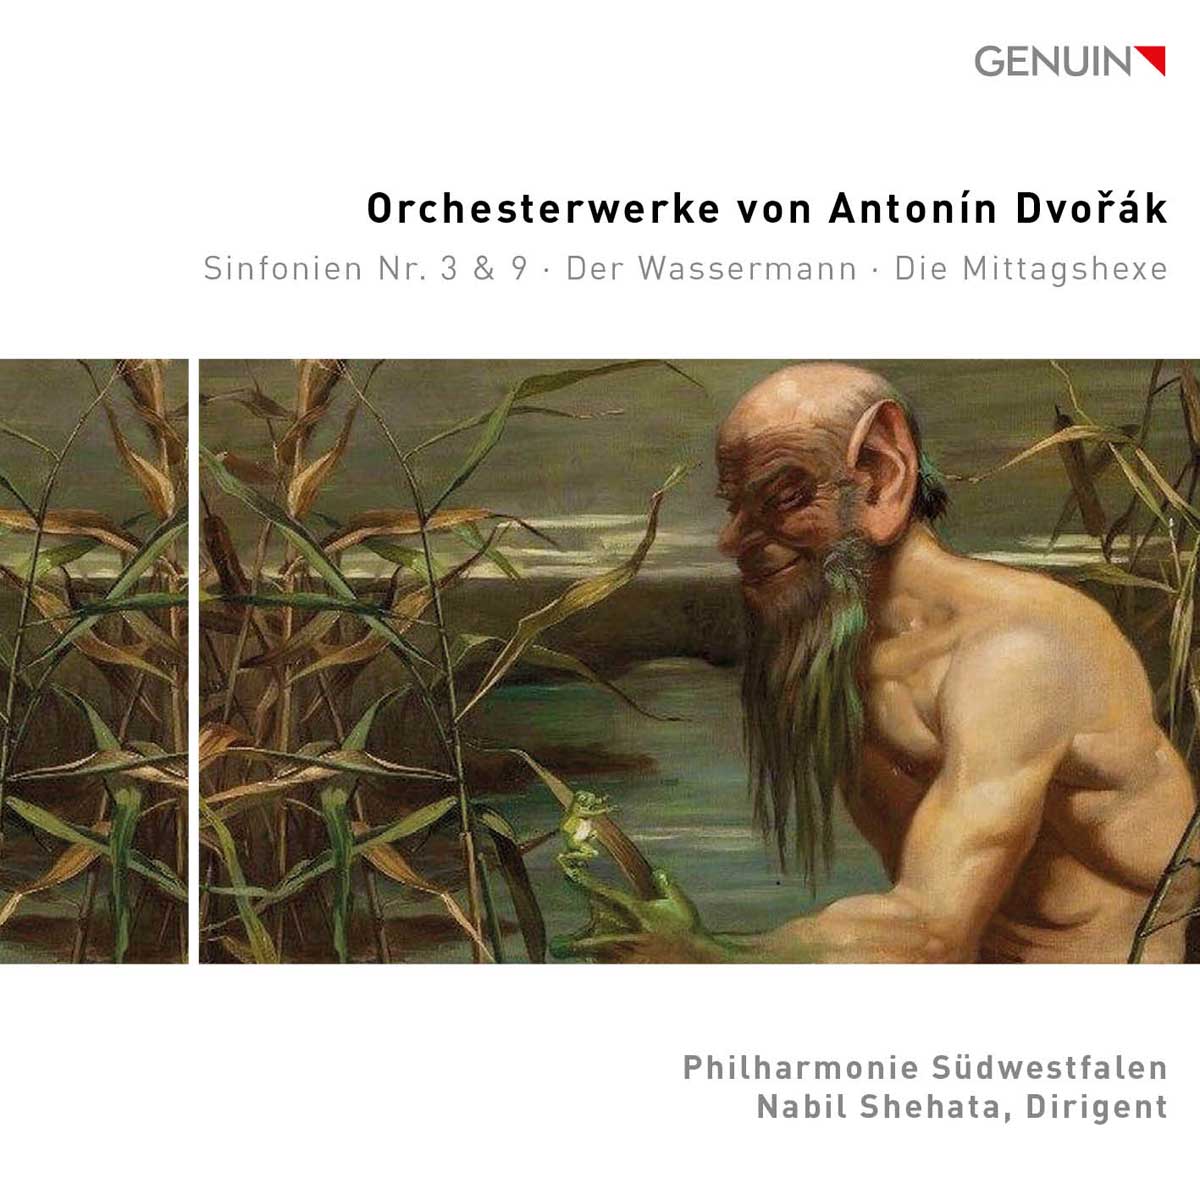 CD album cover 'Orchesterwerke von Antonín Dvorák' (GEN 24853) with Philharmonie Südwestfalen, Nabil Shehata